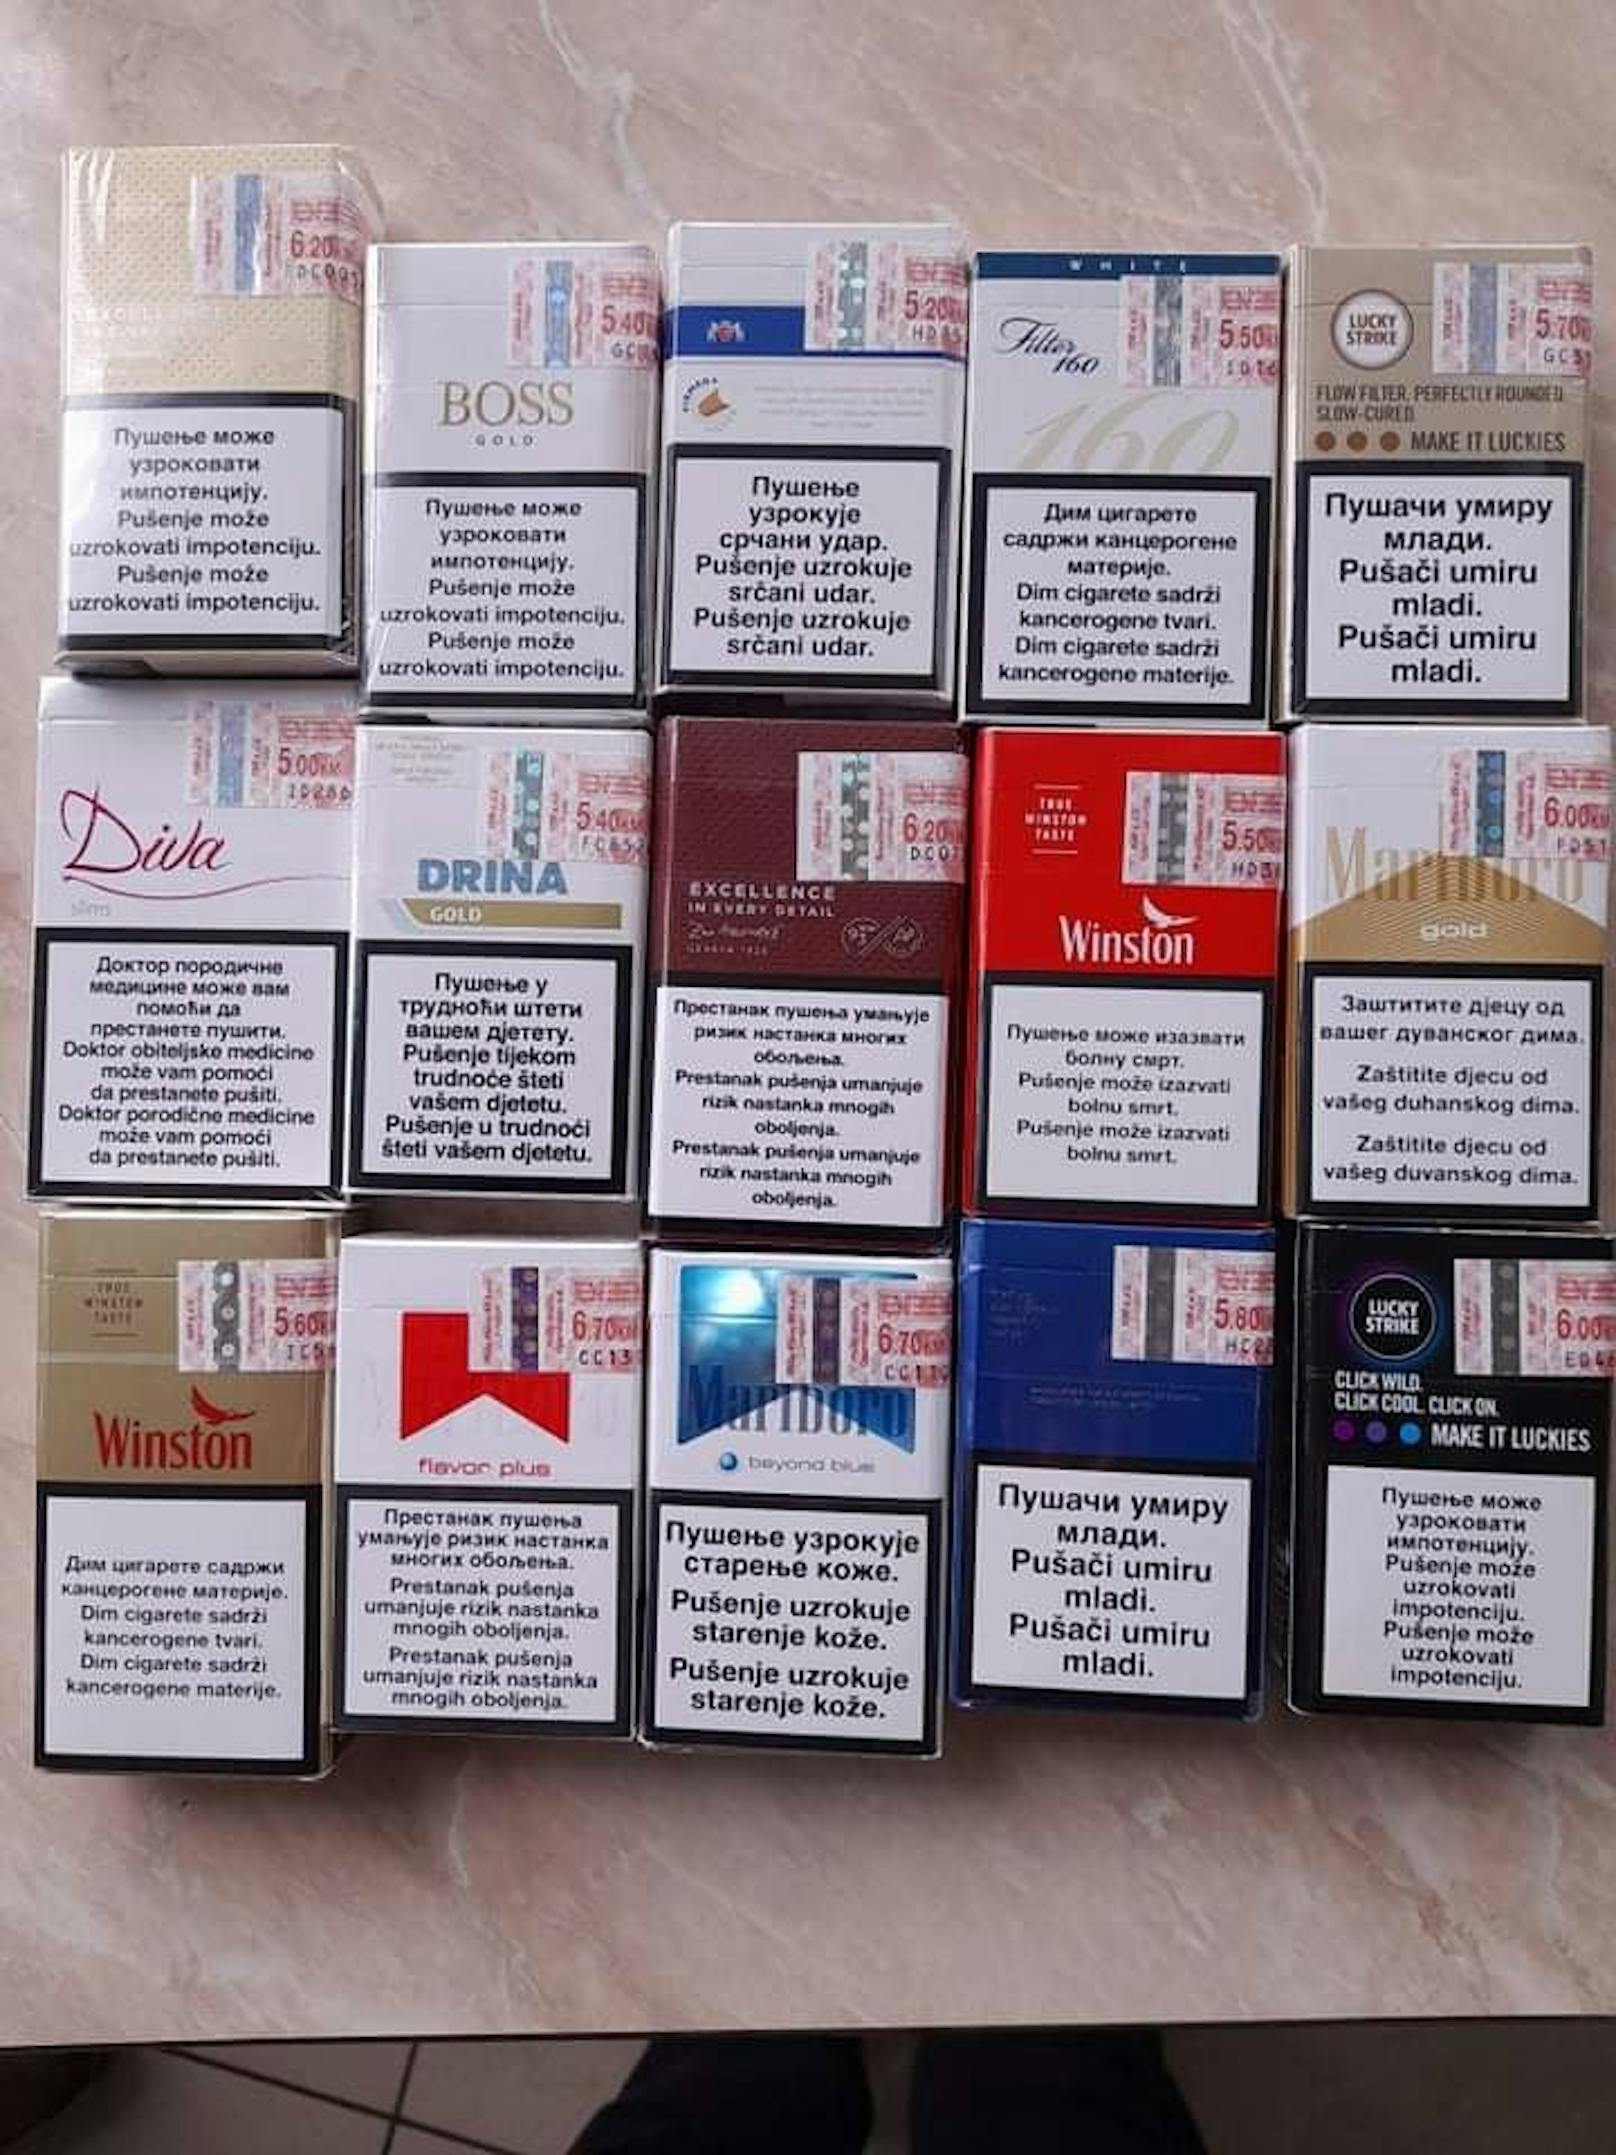 Zigaretten in Bosnien kosten rund die Hälfte